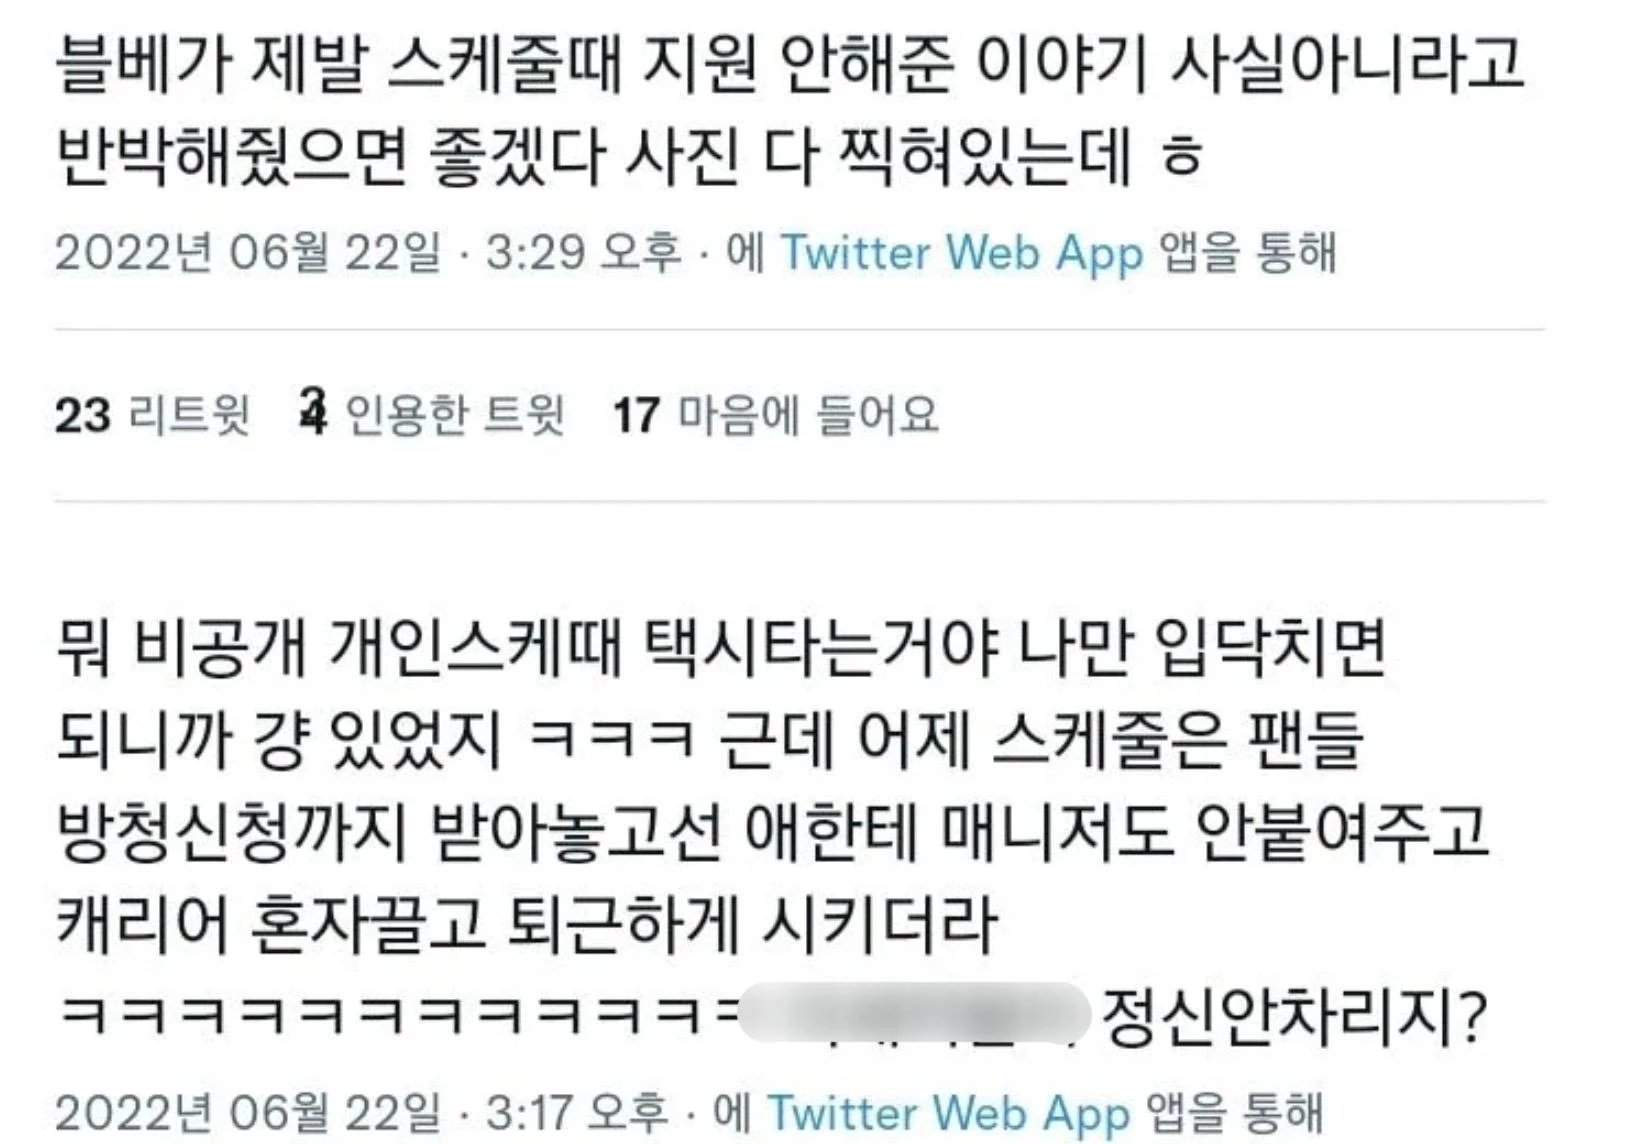 과거 "이달의 소녀" 팬들이 작성한 츄 홀대설 글 / 트위터